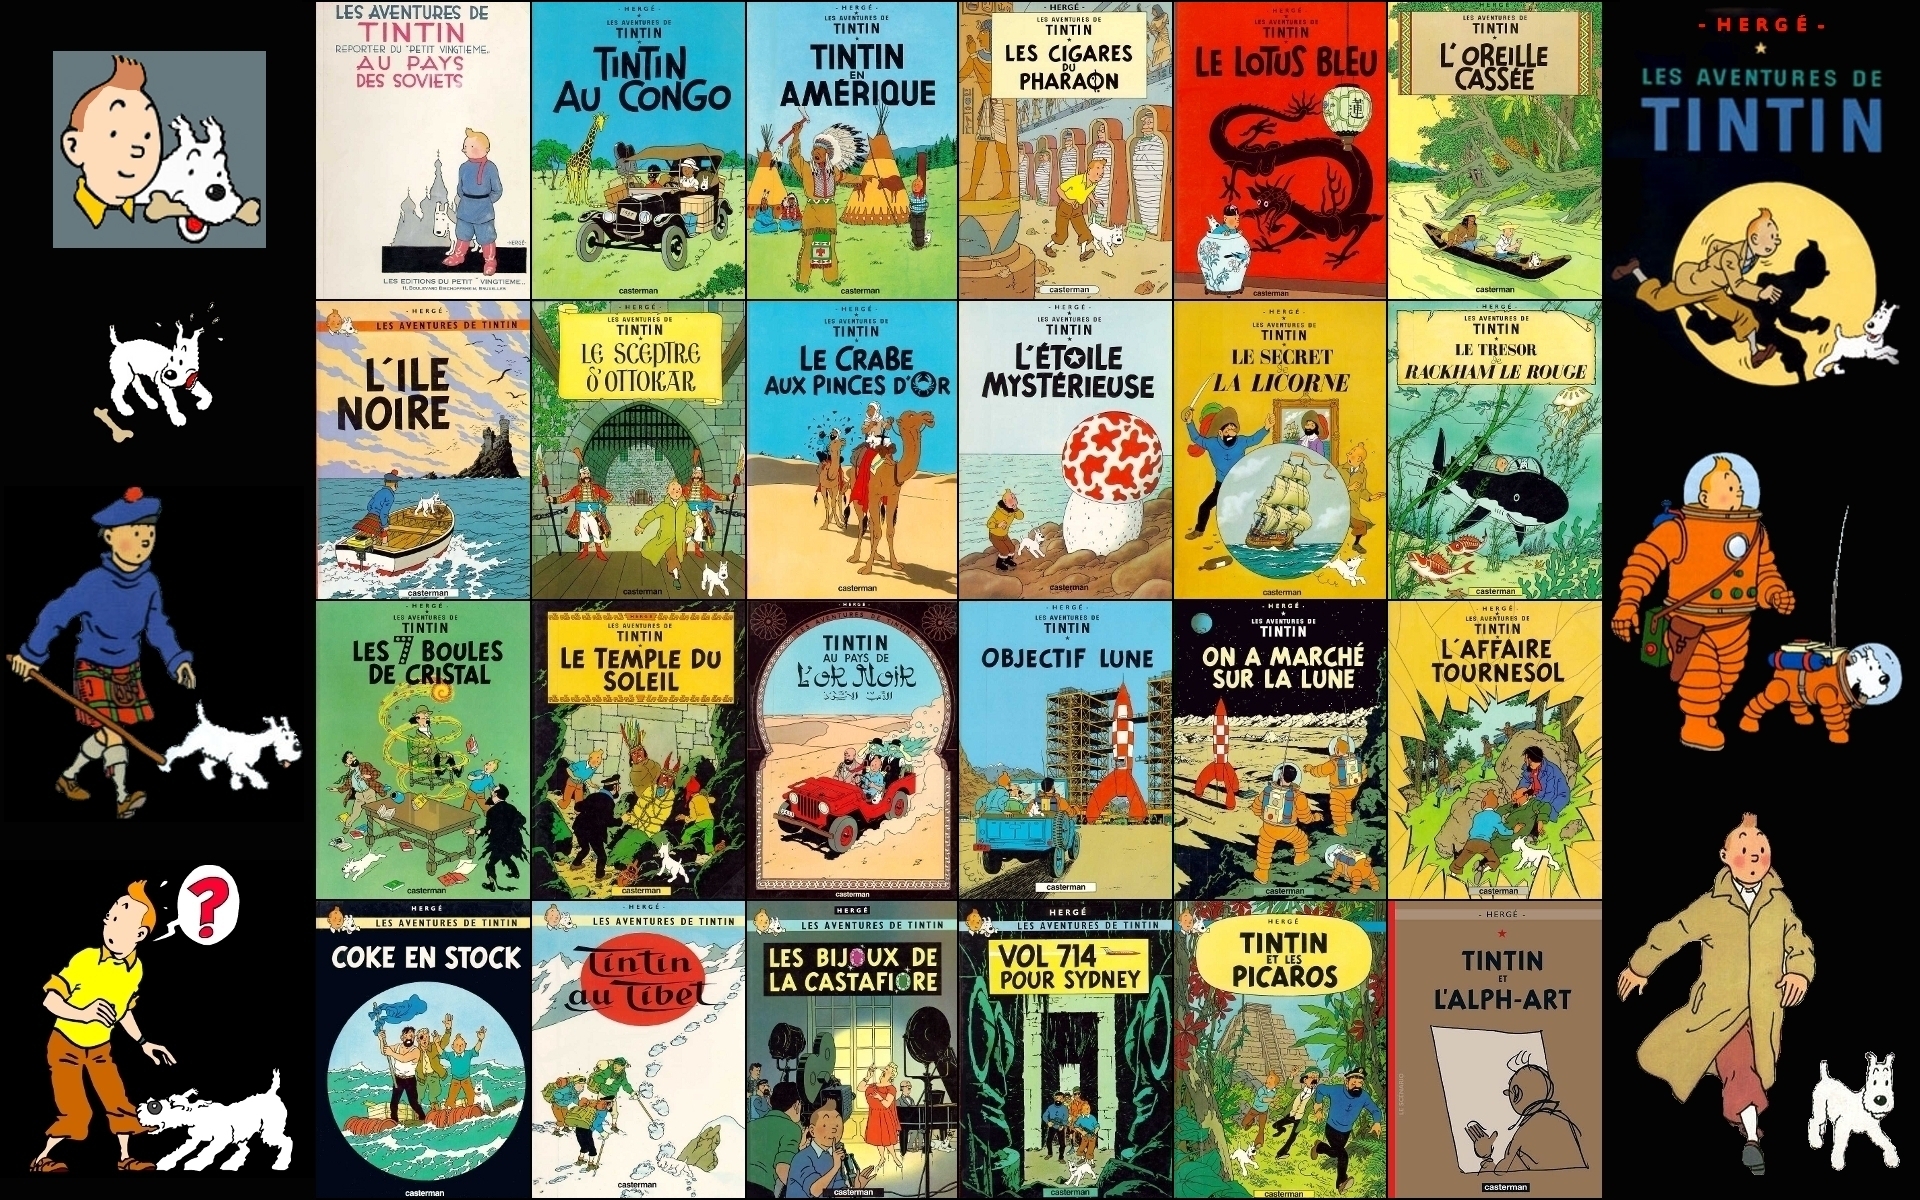 The-adventures-of-Tintin-tintin-4985656-1920-1200.jpg